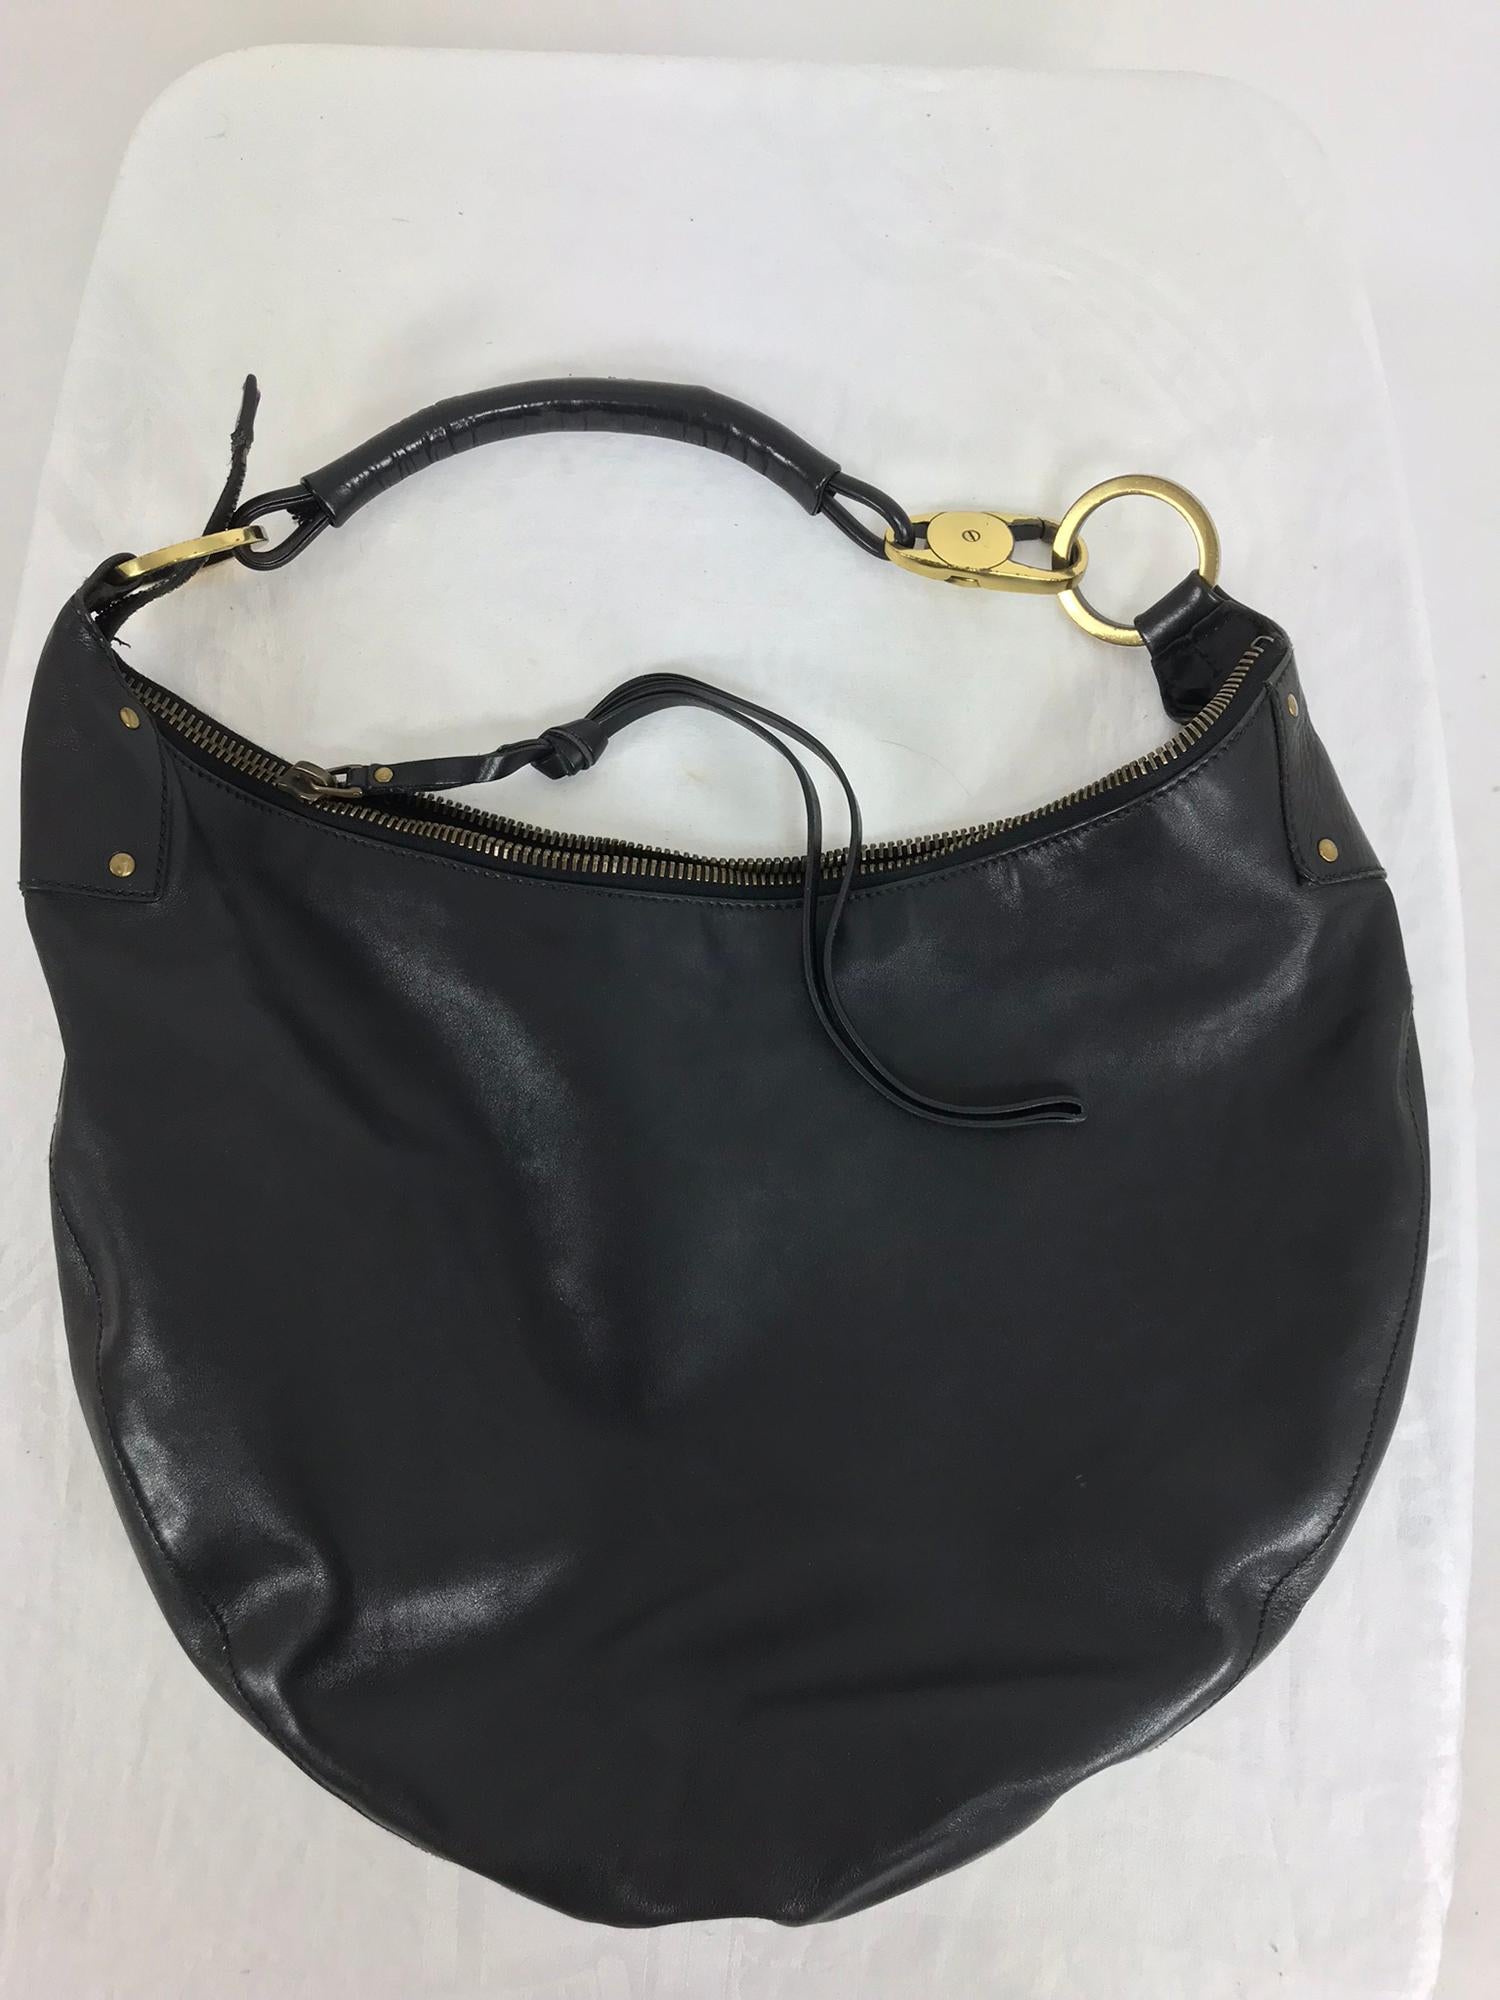 Gucci Black Leather shoulder bag with gold hardware 7